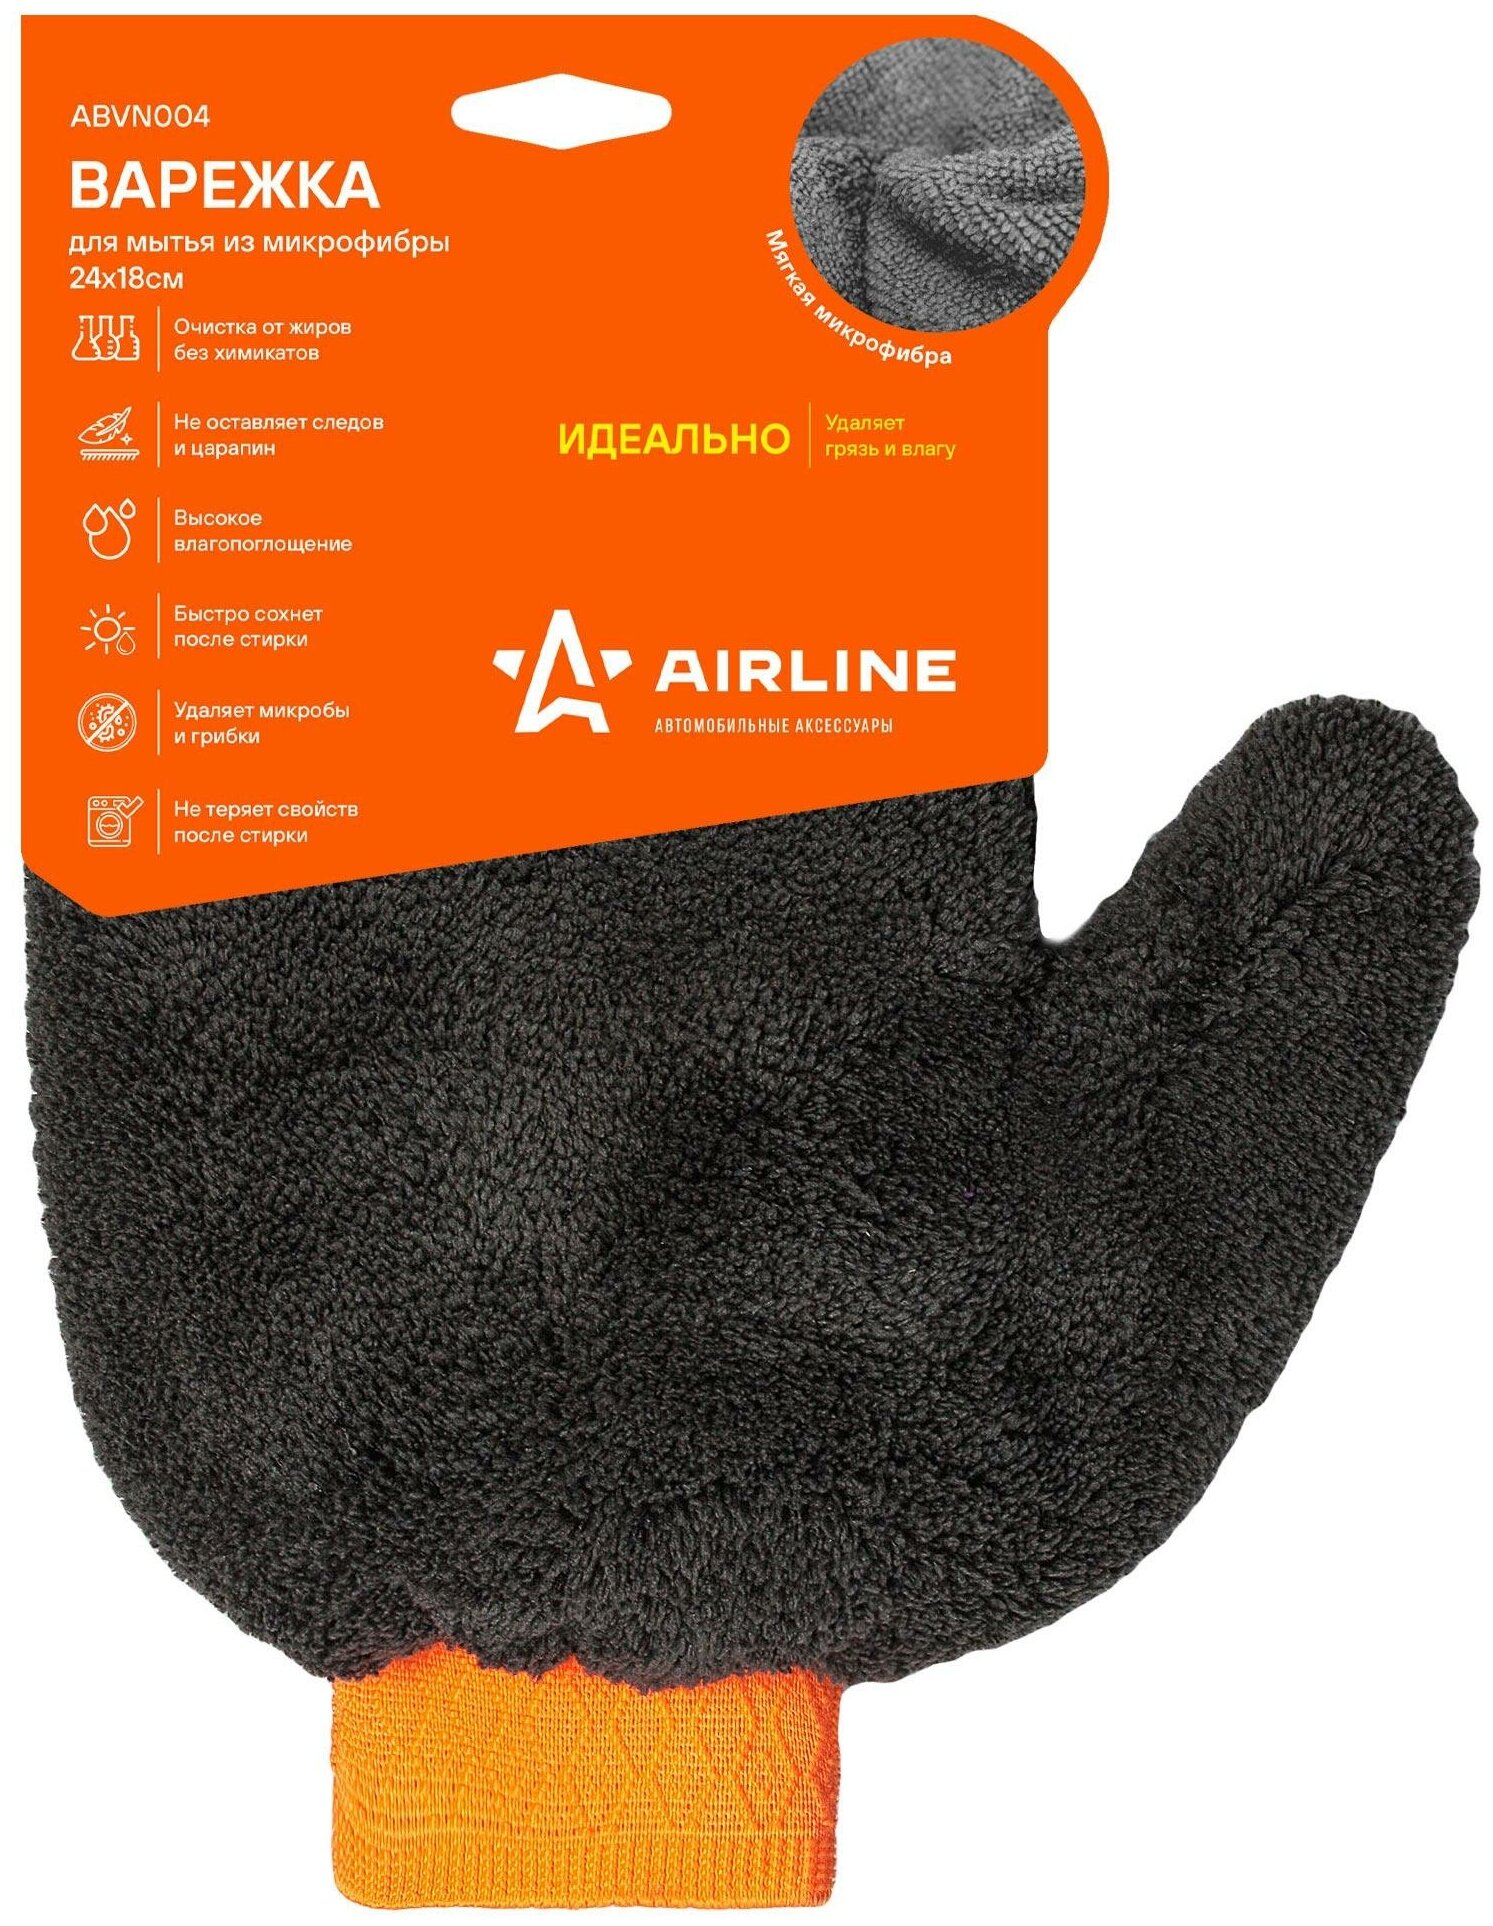 Варежка для мытья из микрофибры (24*18 см) ABVN004 AIRLINE